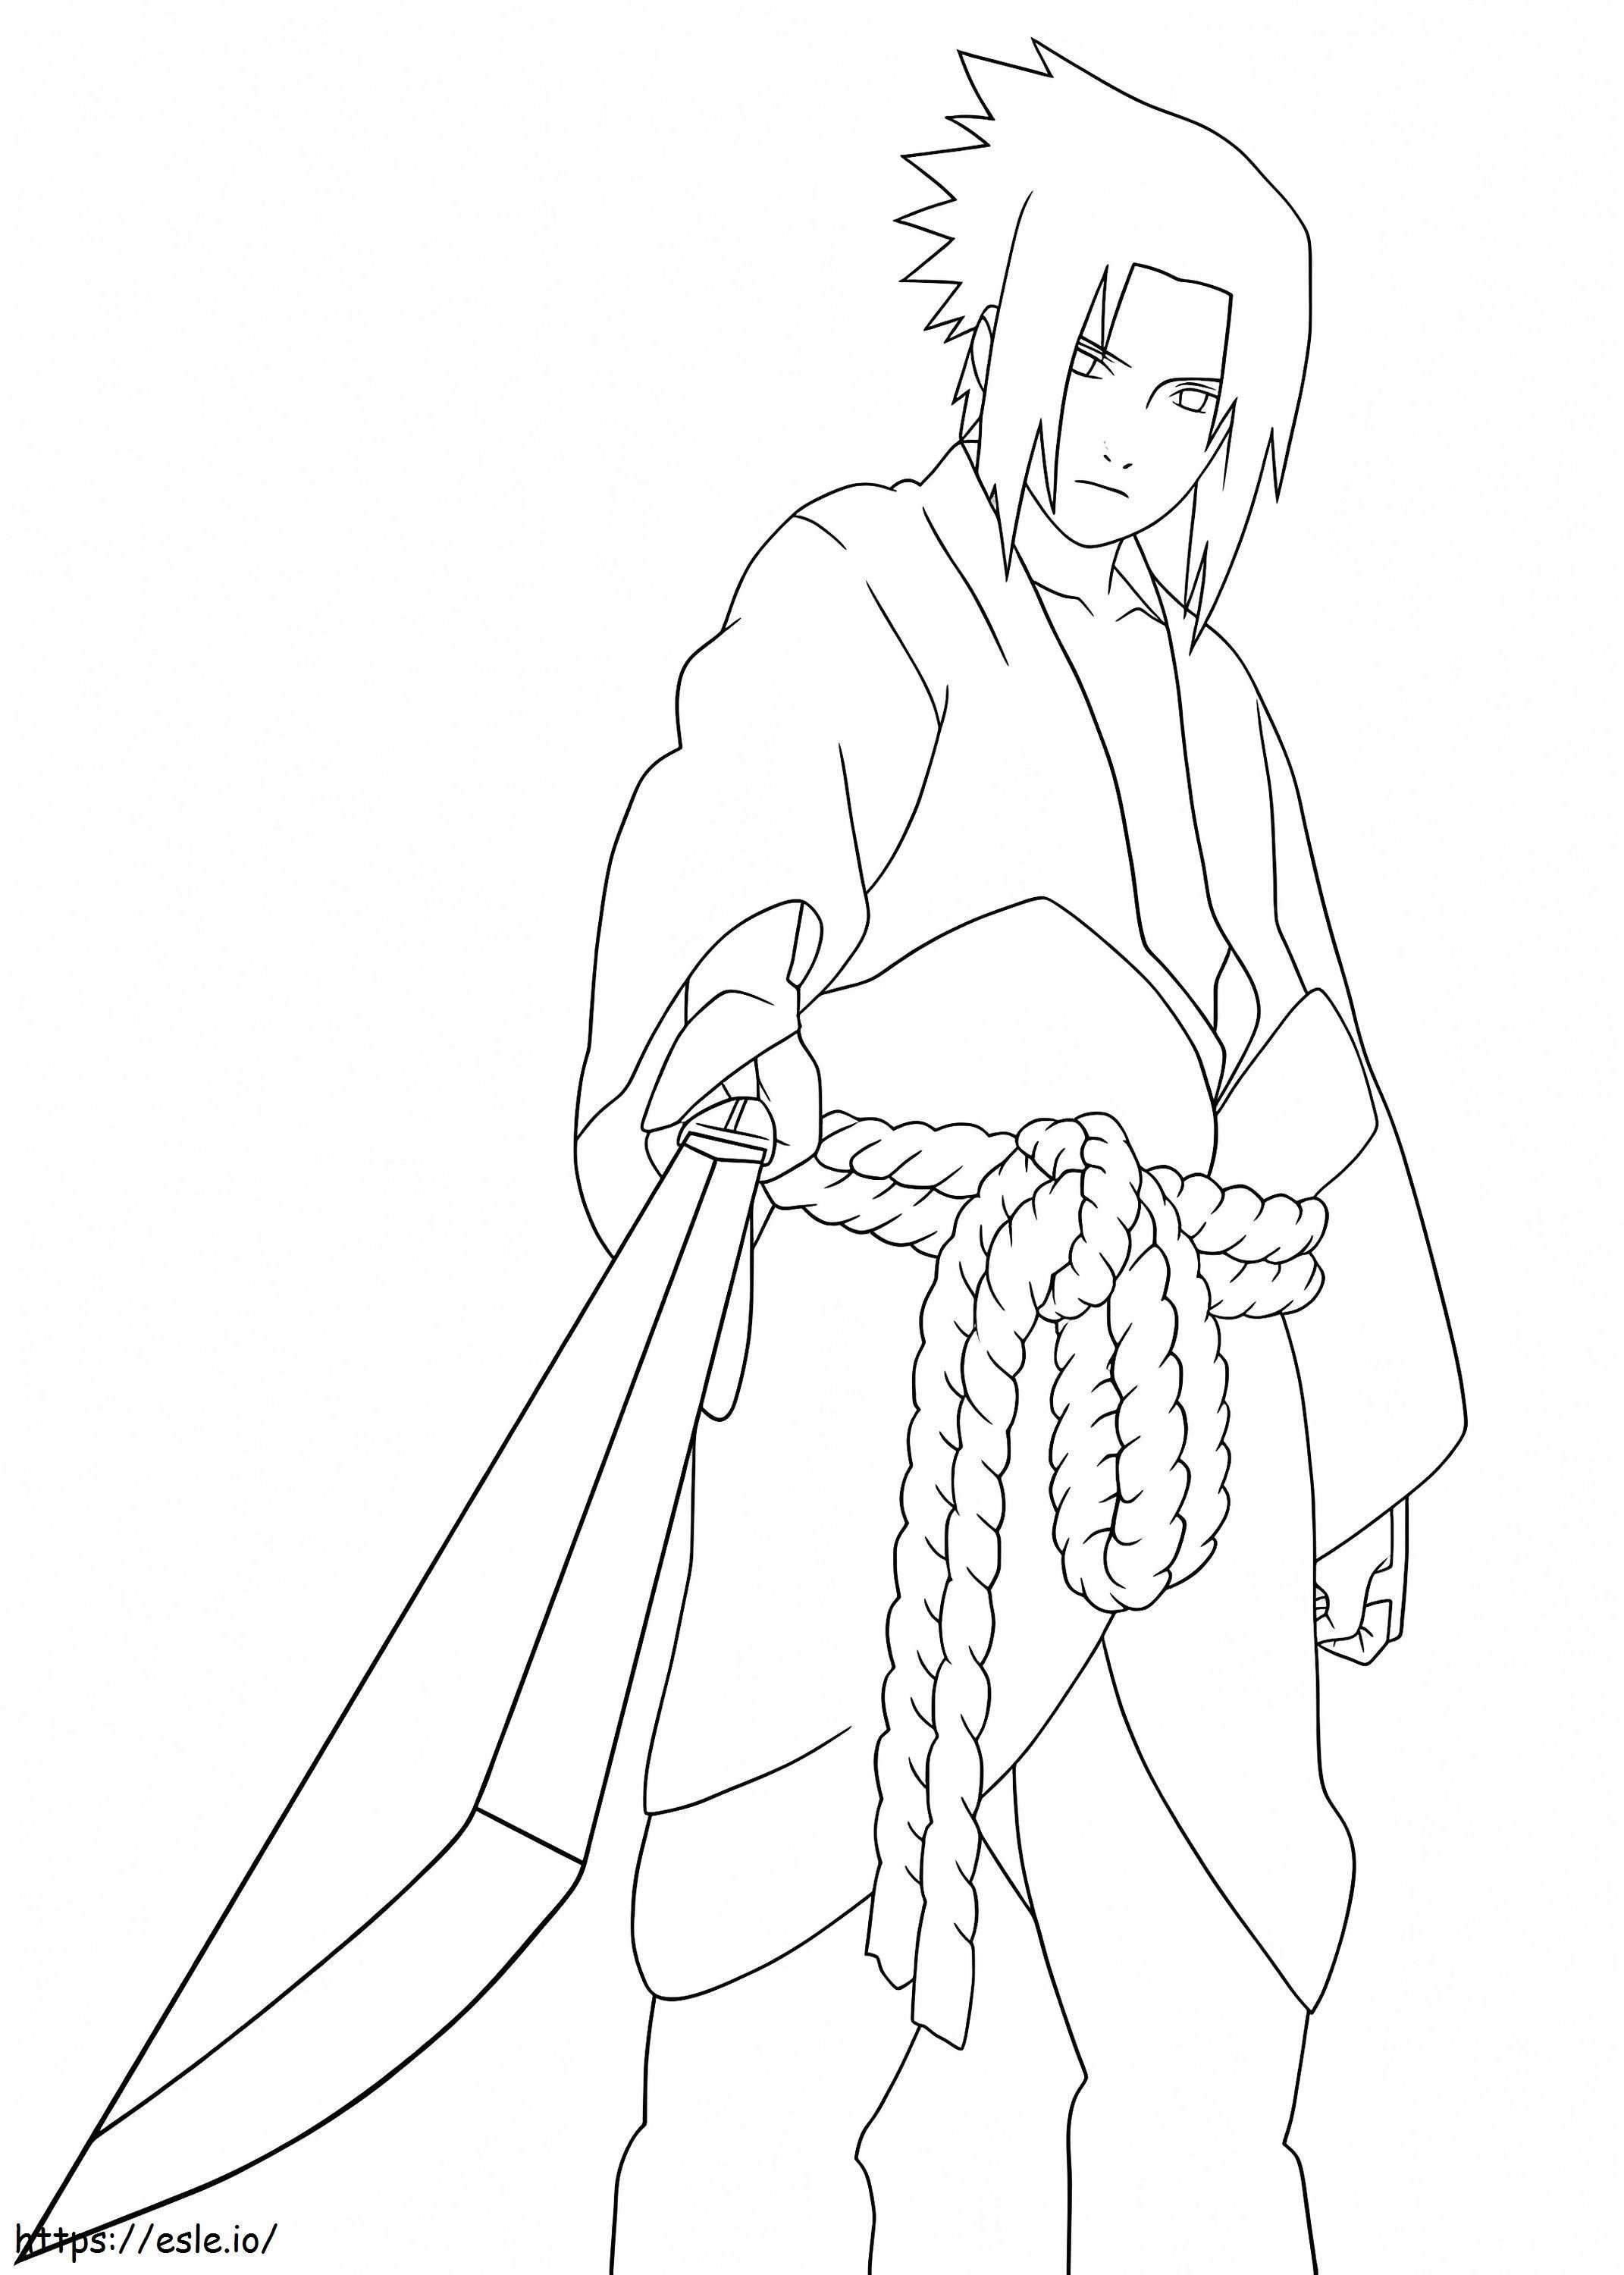  Sasuke Dengan Pedang A4 Gambar Mewarnai